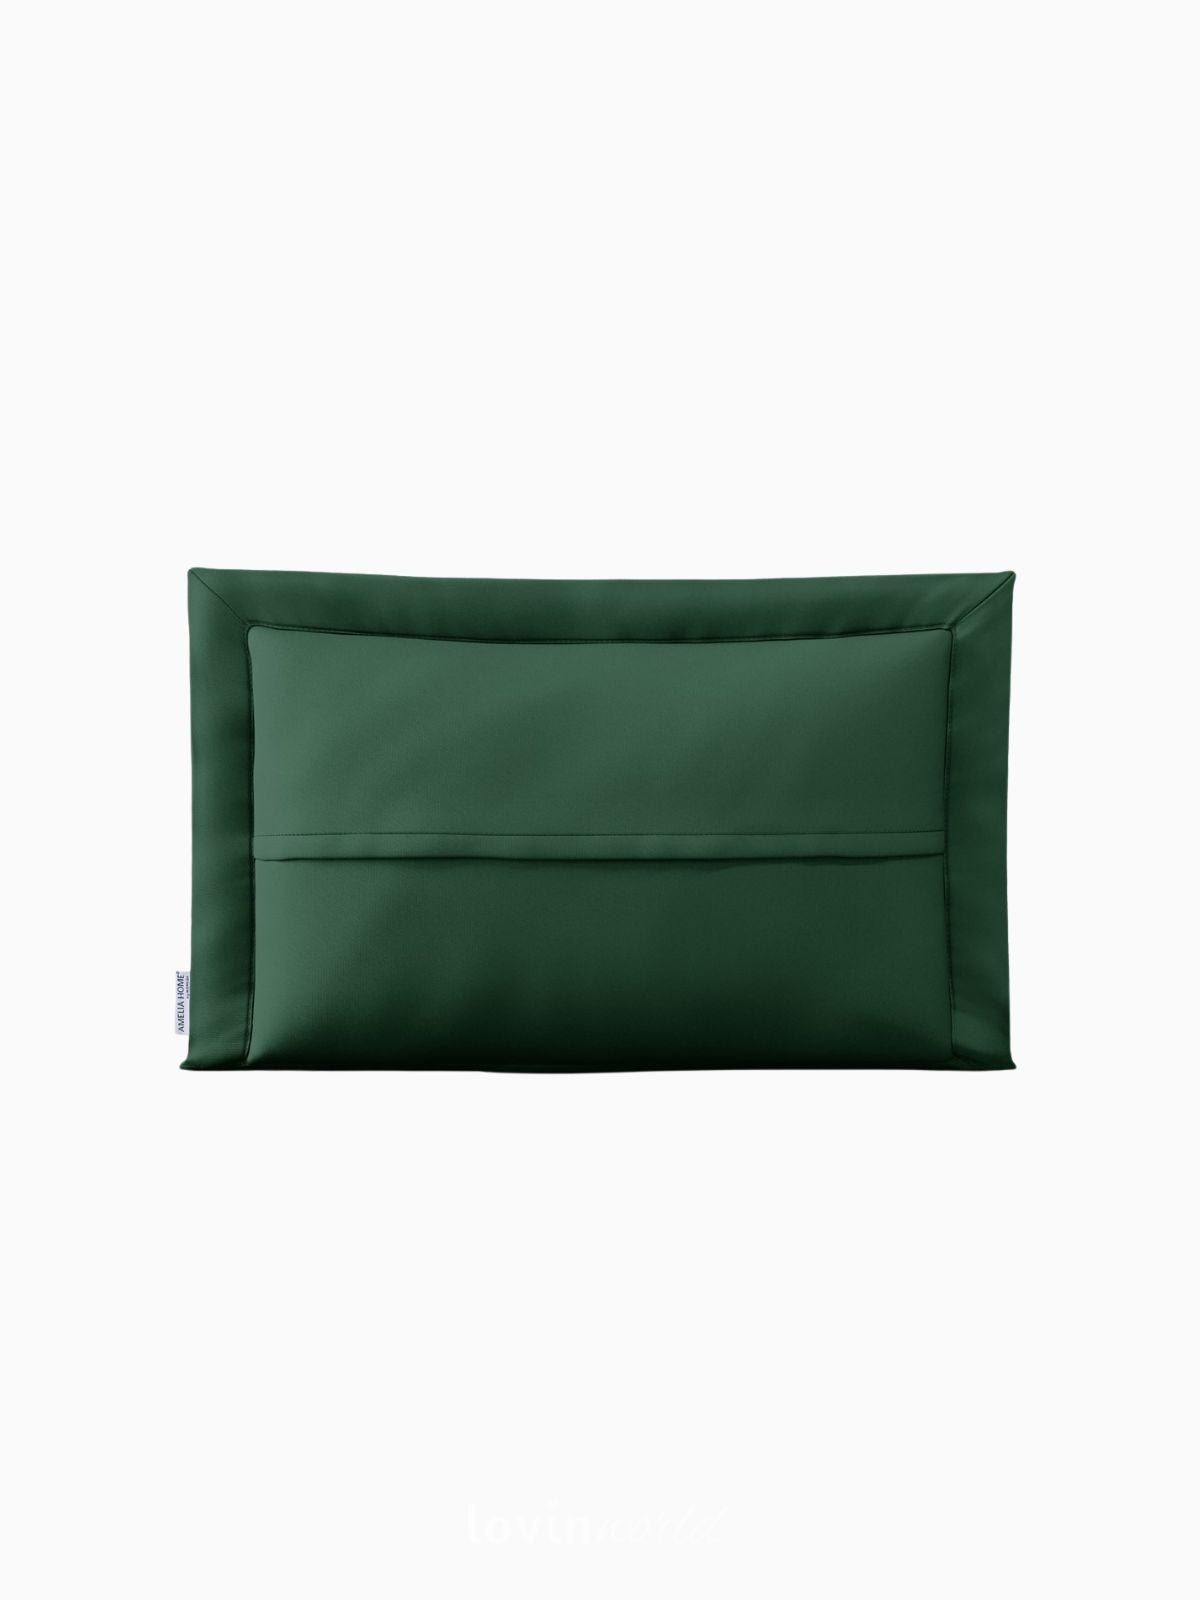 Cuscino decorativo Ophelia in colore verde 50x70 cm.-3